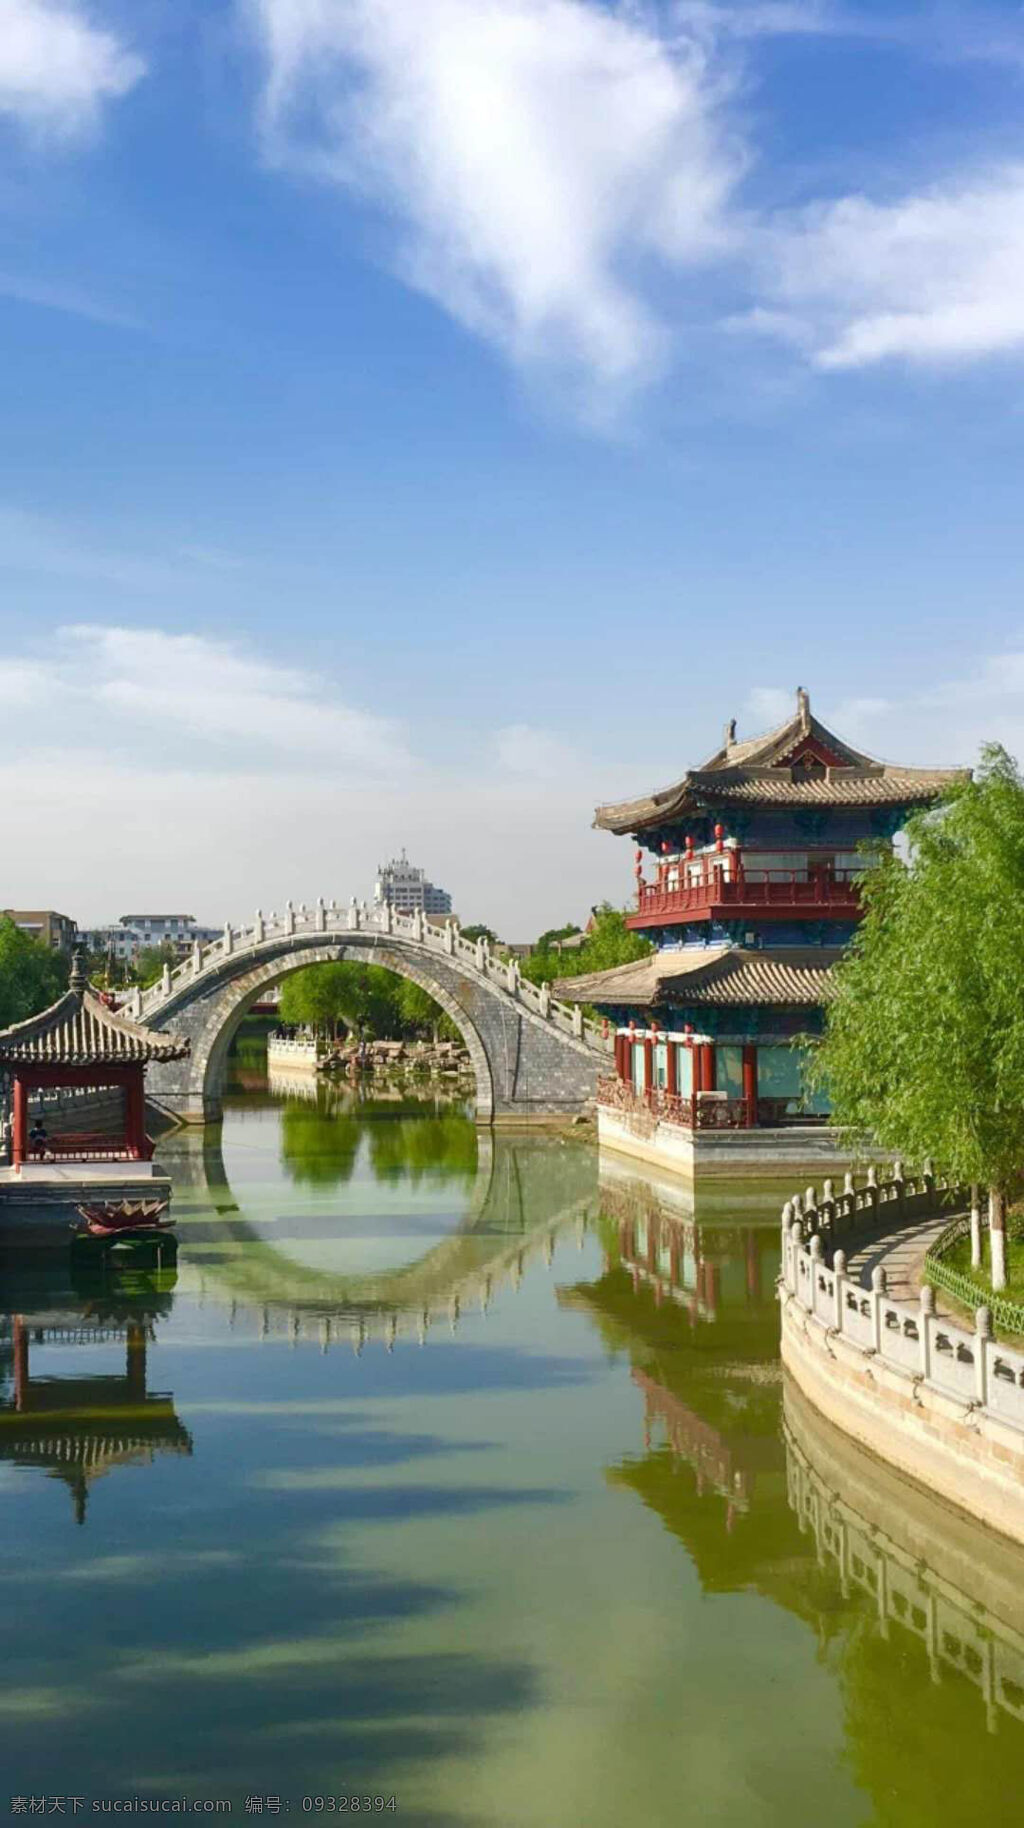 美丽 古城 风景 蓝天 白云 小亭子 楼阁 石拱桥 水 绿树 中国风景 旅游摄影 国内旅游